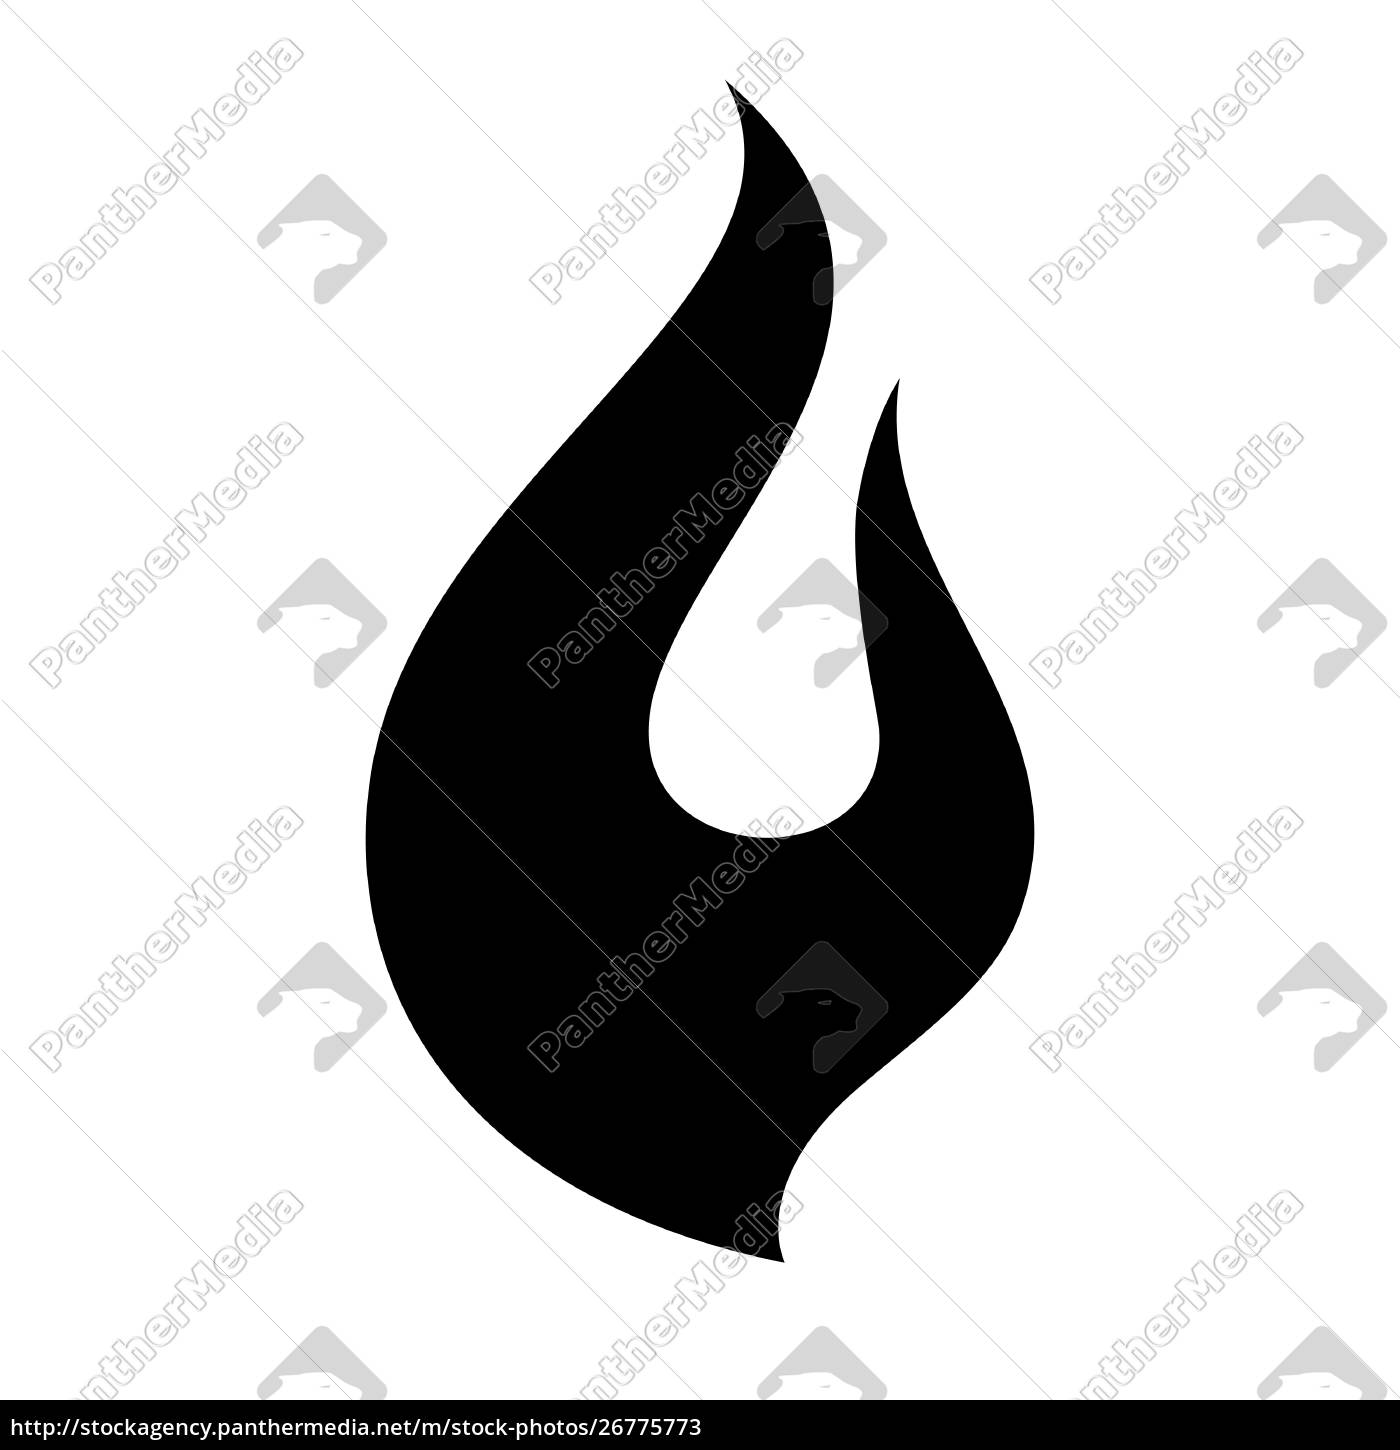 conjunto de ícones de chamas de fogo. preto em um fundo branco